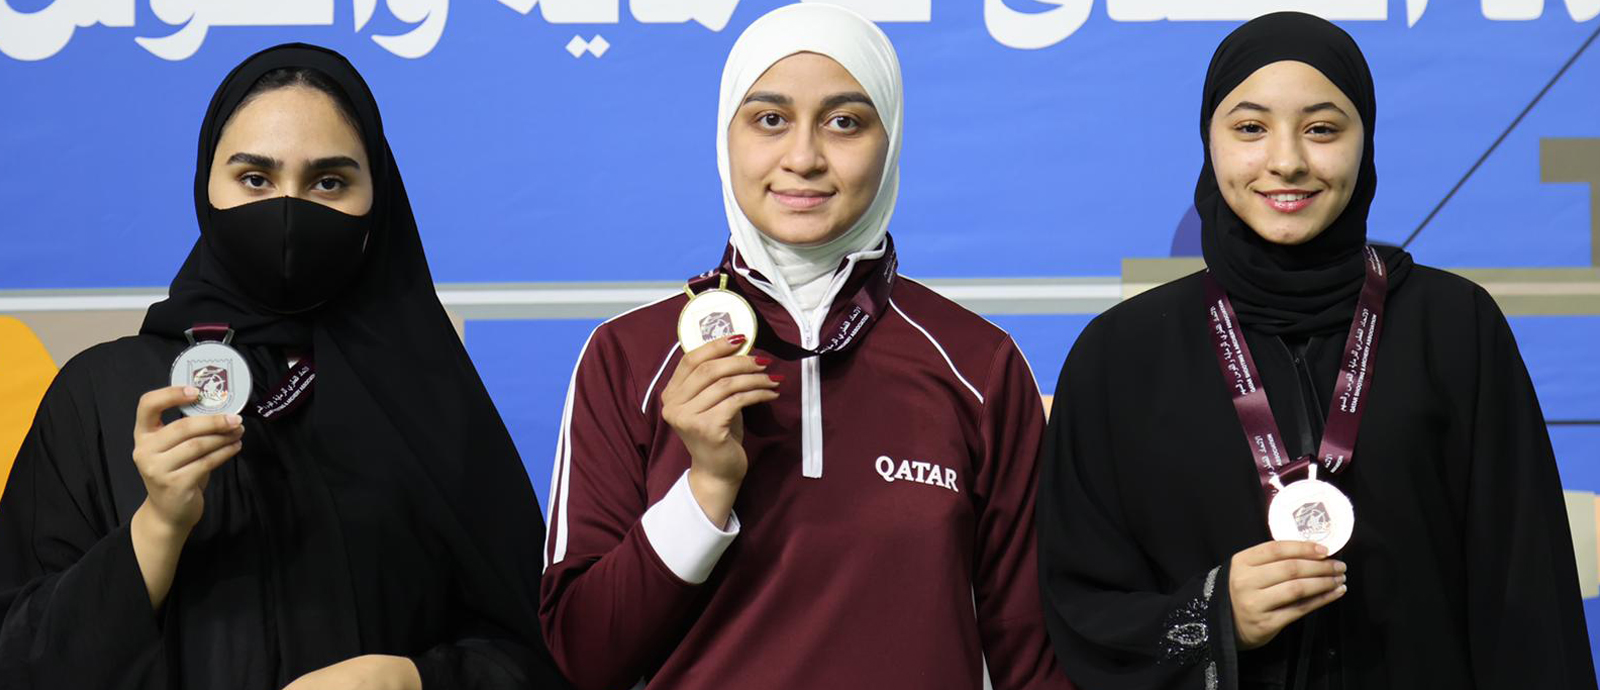 Al Suwaidi, Quintanilla clinch gold medals